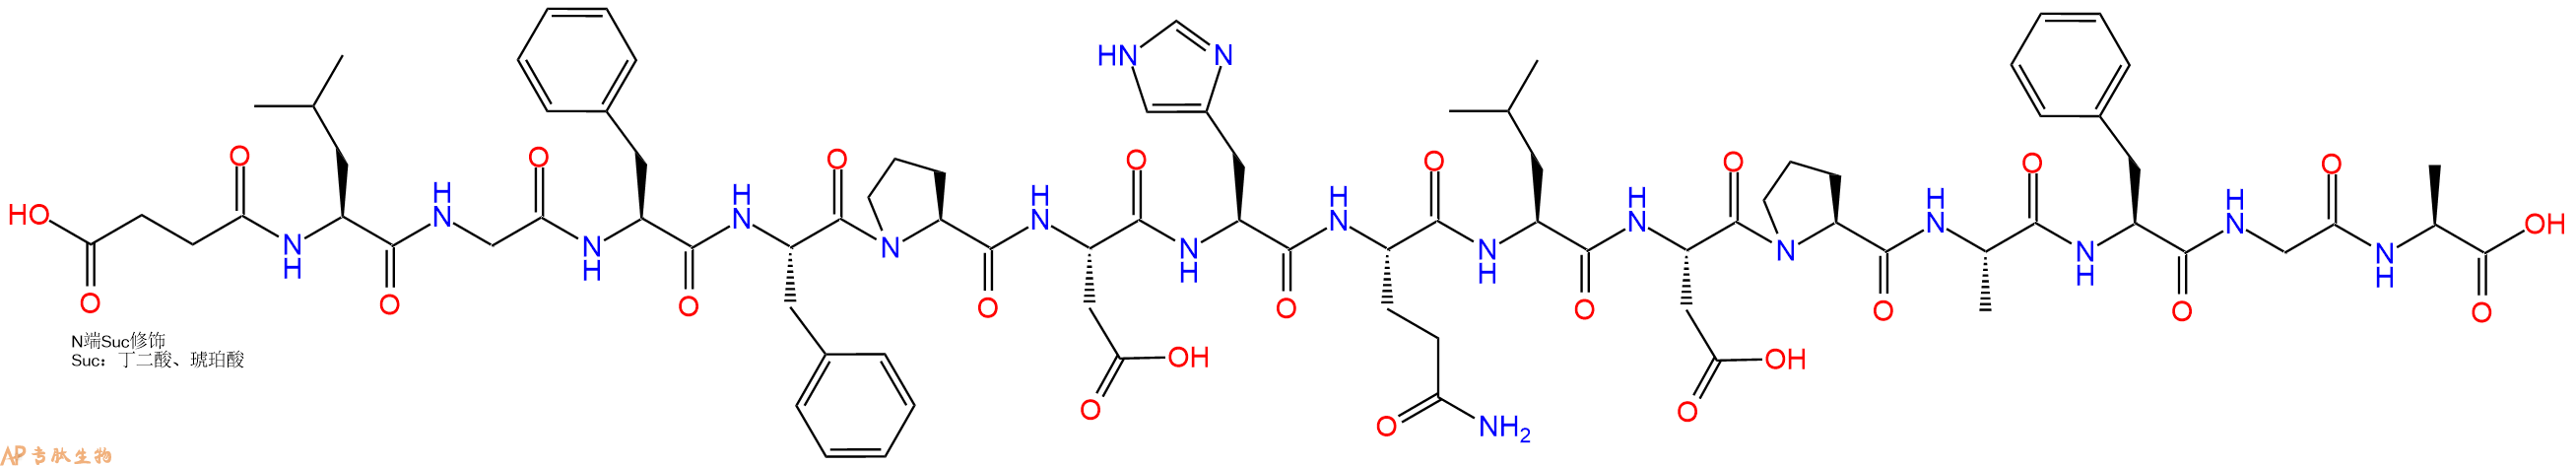 专肽生物产品Suc-Leu-Gly-Phe-Phe-Pro-Asp-His-Gln-Leu-Asp-Pro-Al